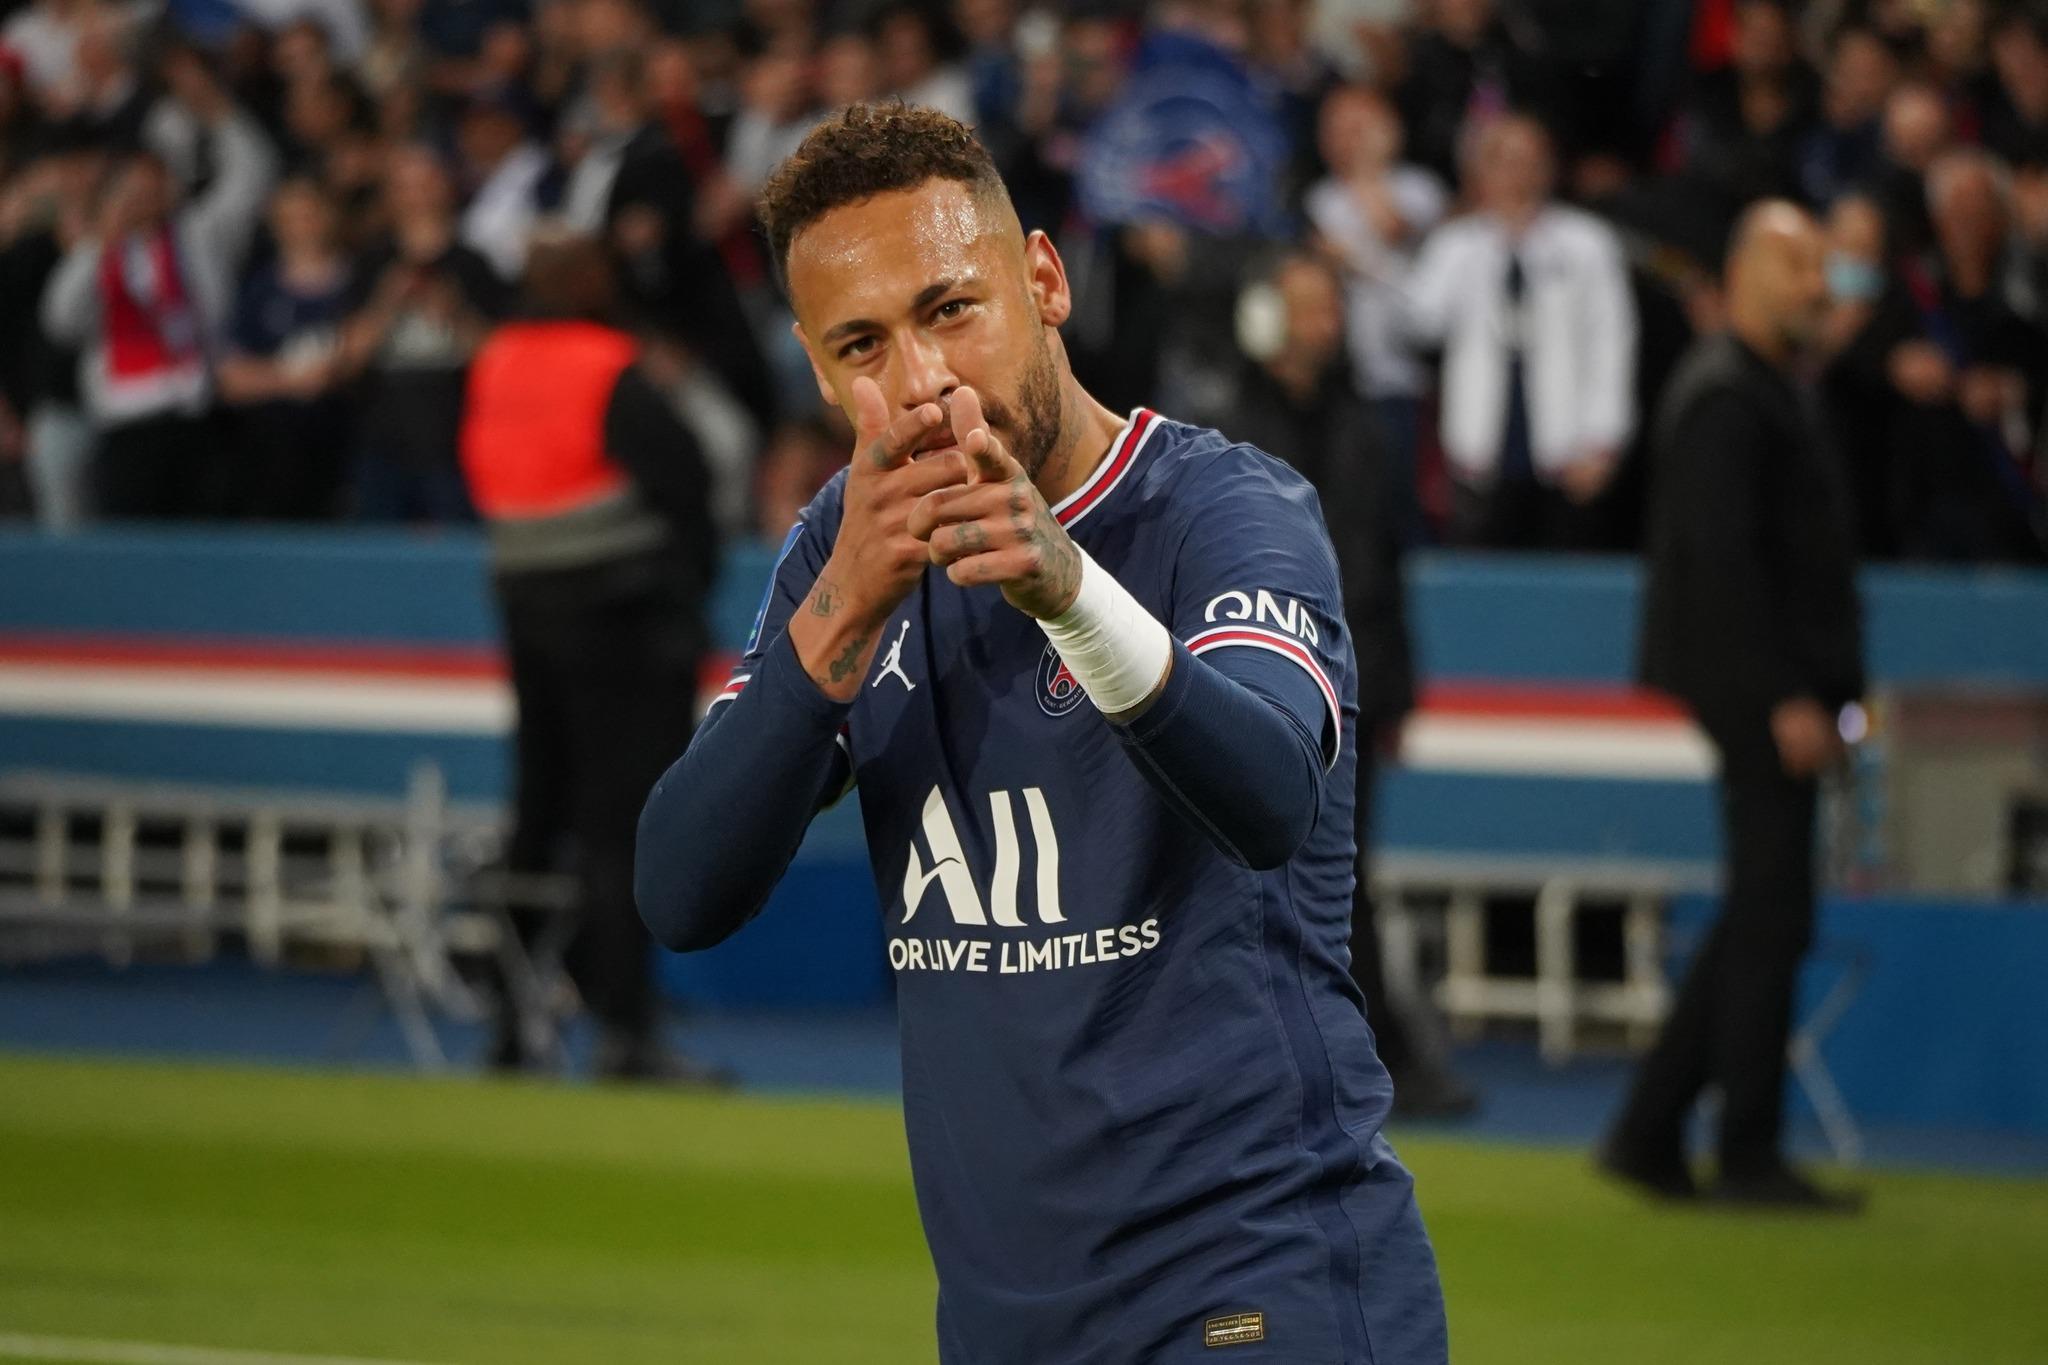 Neymar volta a jogar pelo PSG após seis meses parado e marca dois gols, Esporte